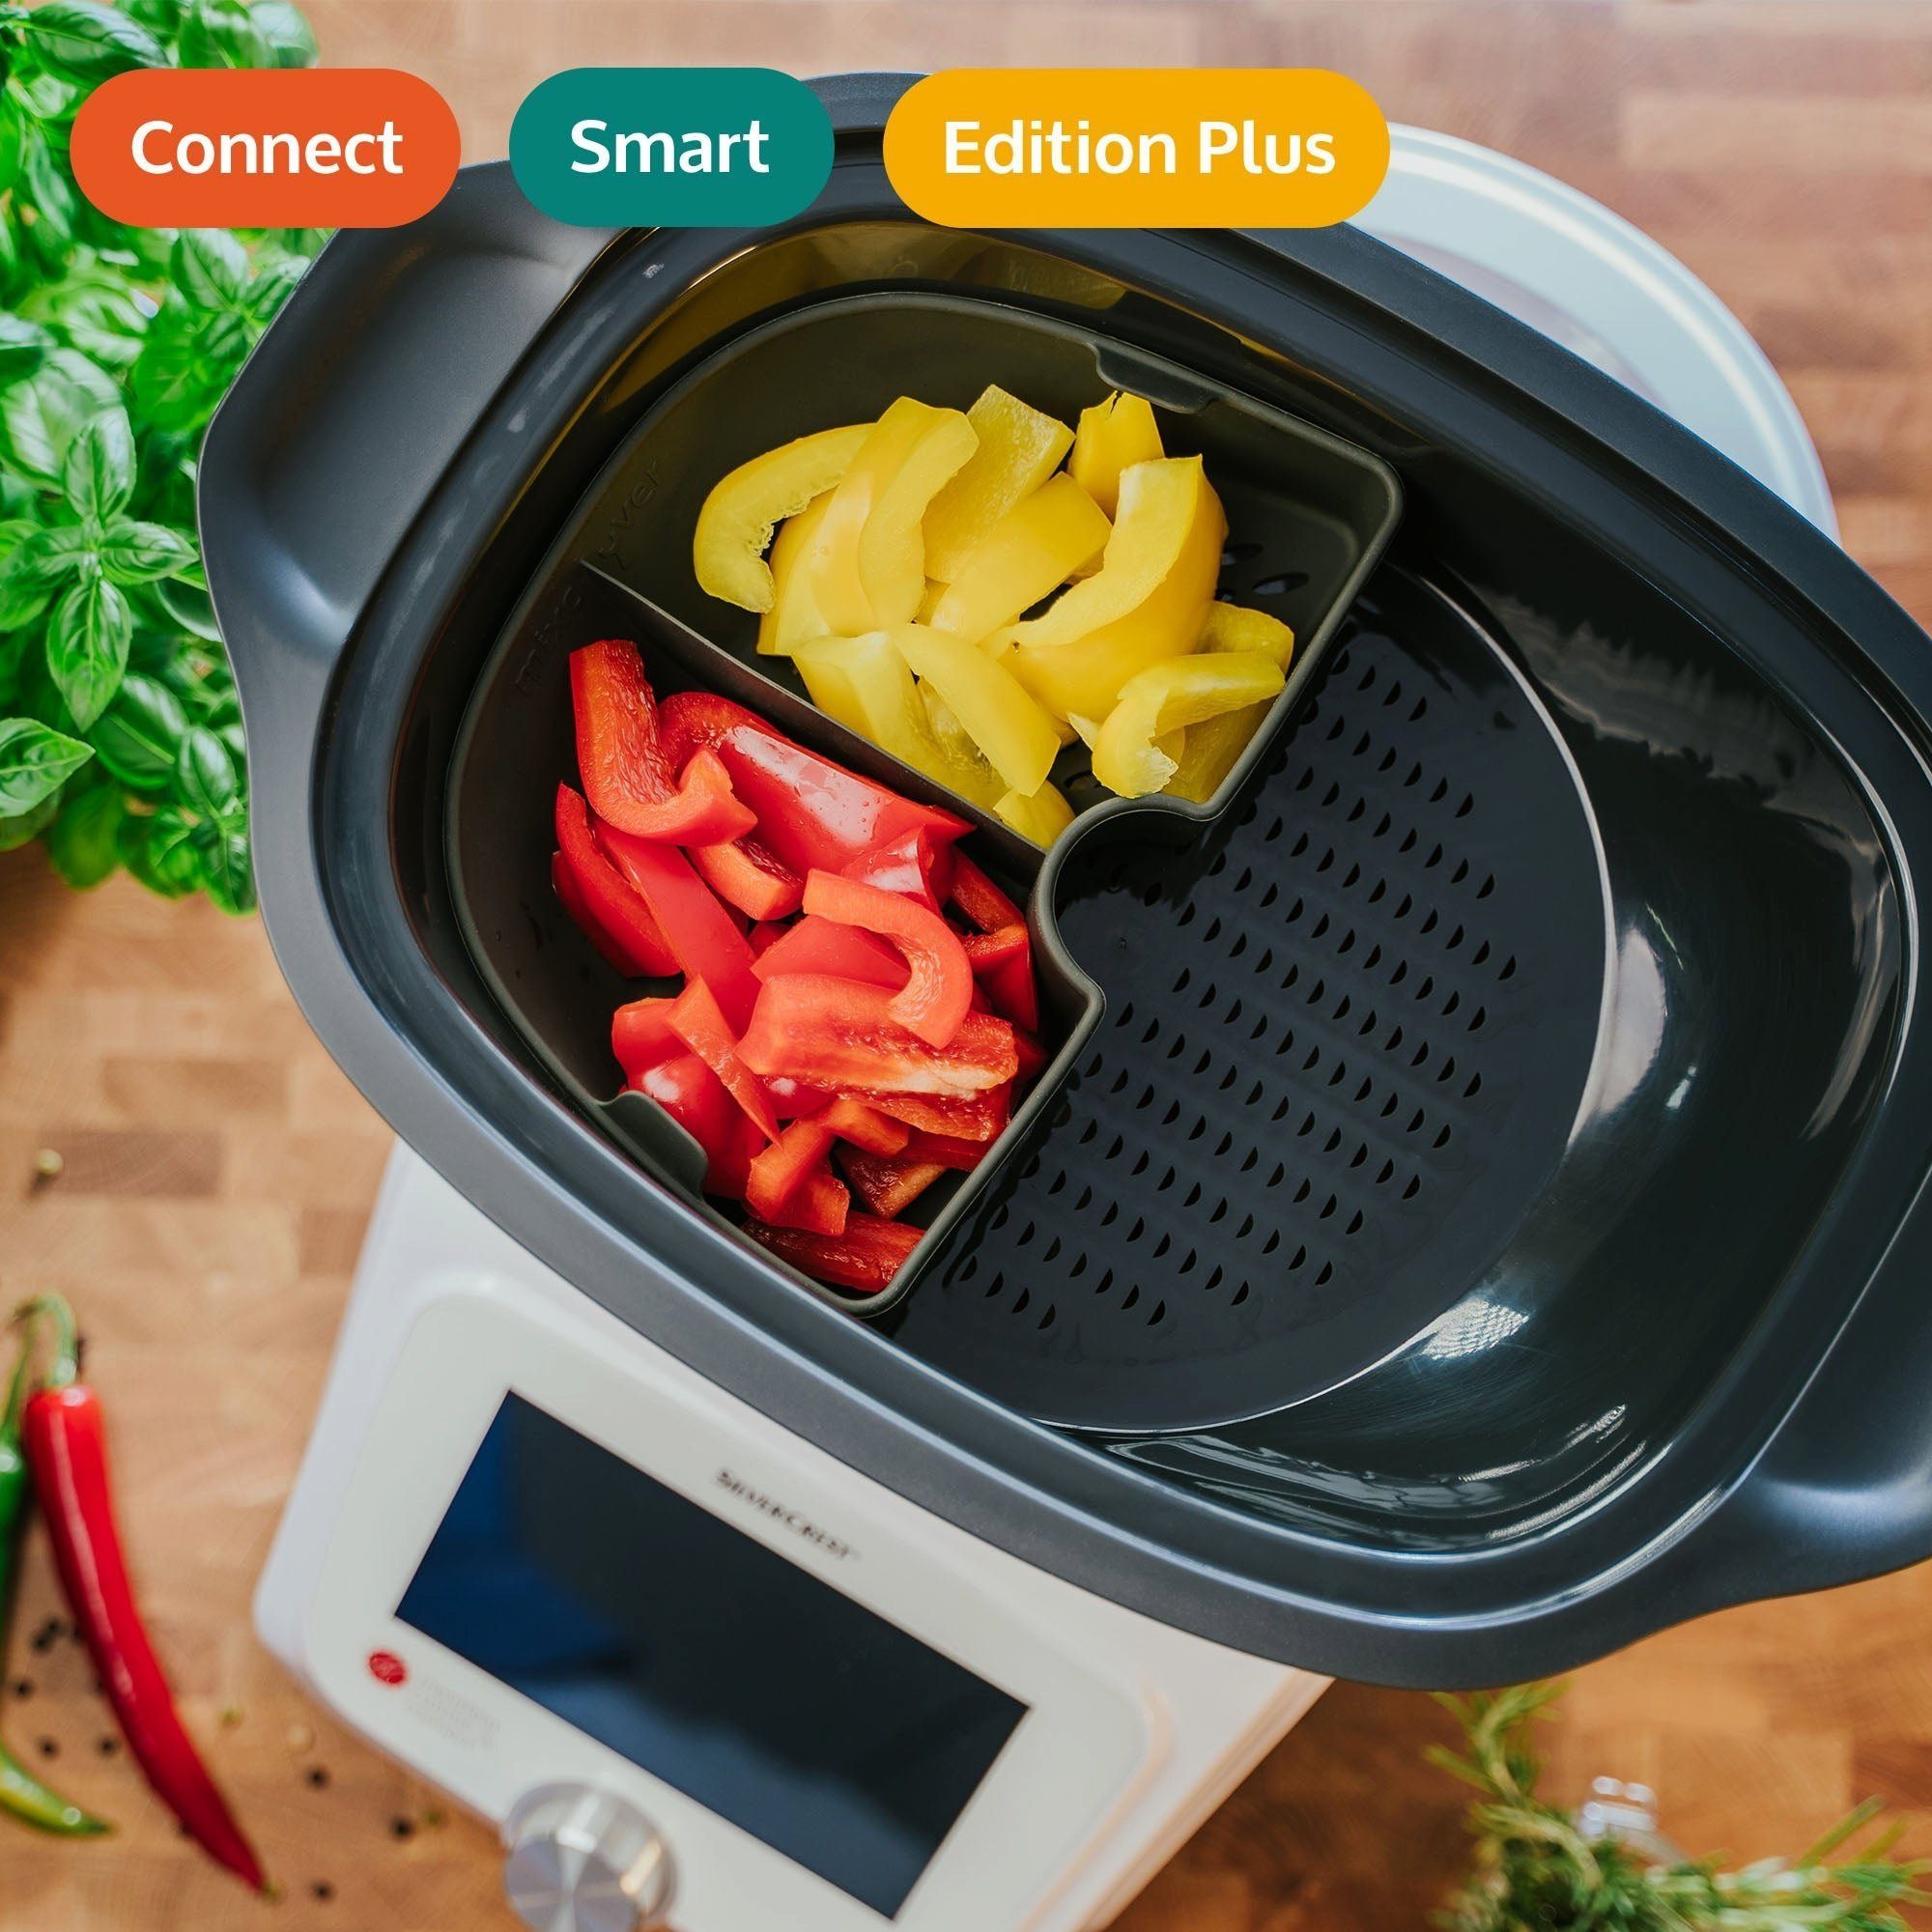 Dampfgarraum Monsieur Mixcover Küchenmaschinen-Adapter mixcover (VIERTEL) & Garraumteiler Cuisine Smart Connect